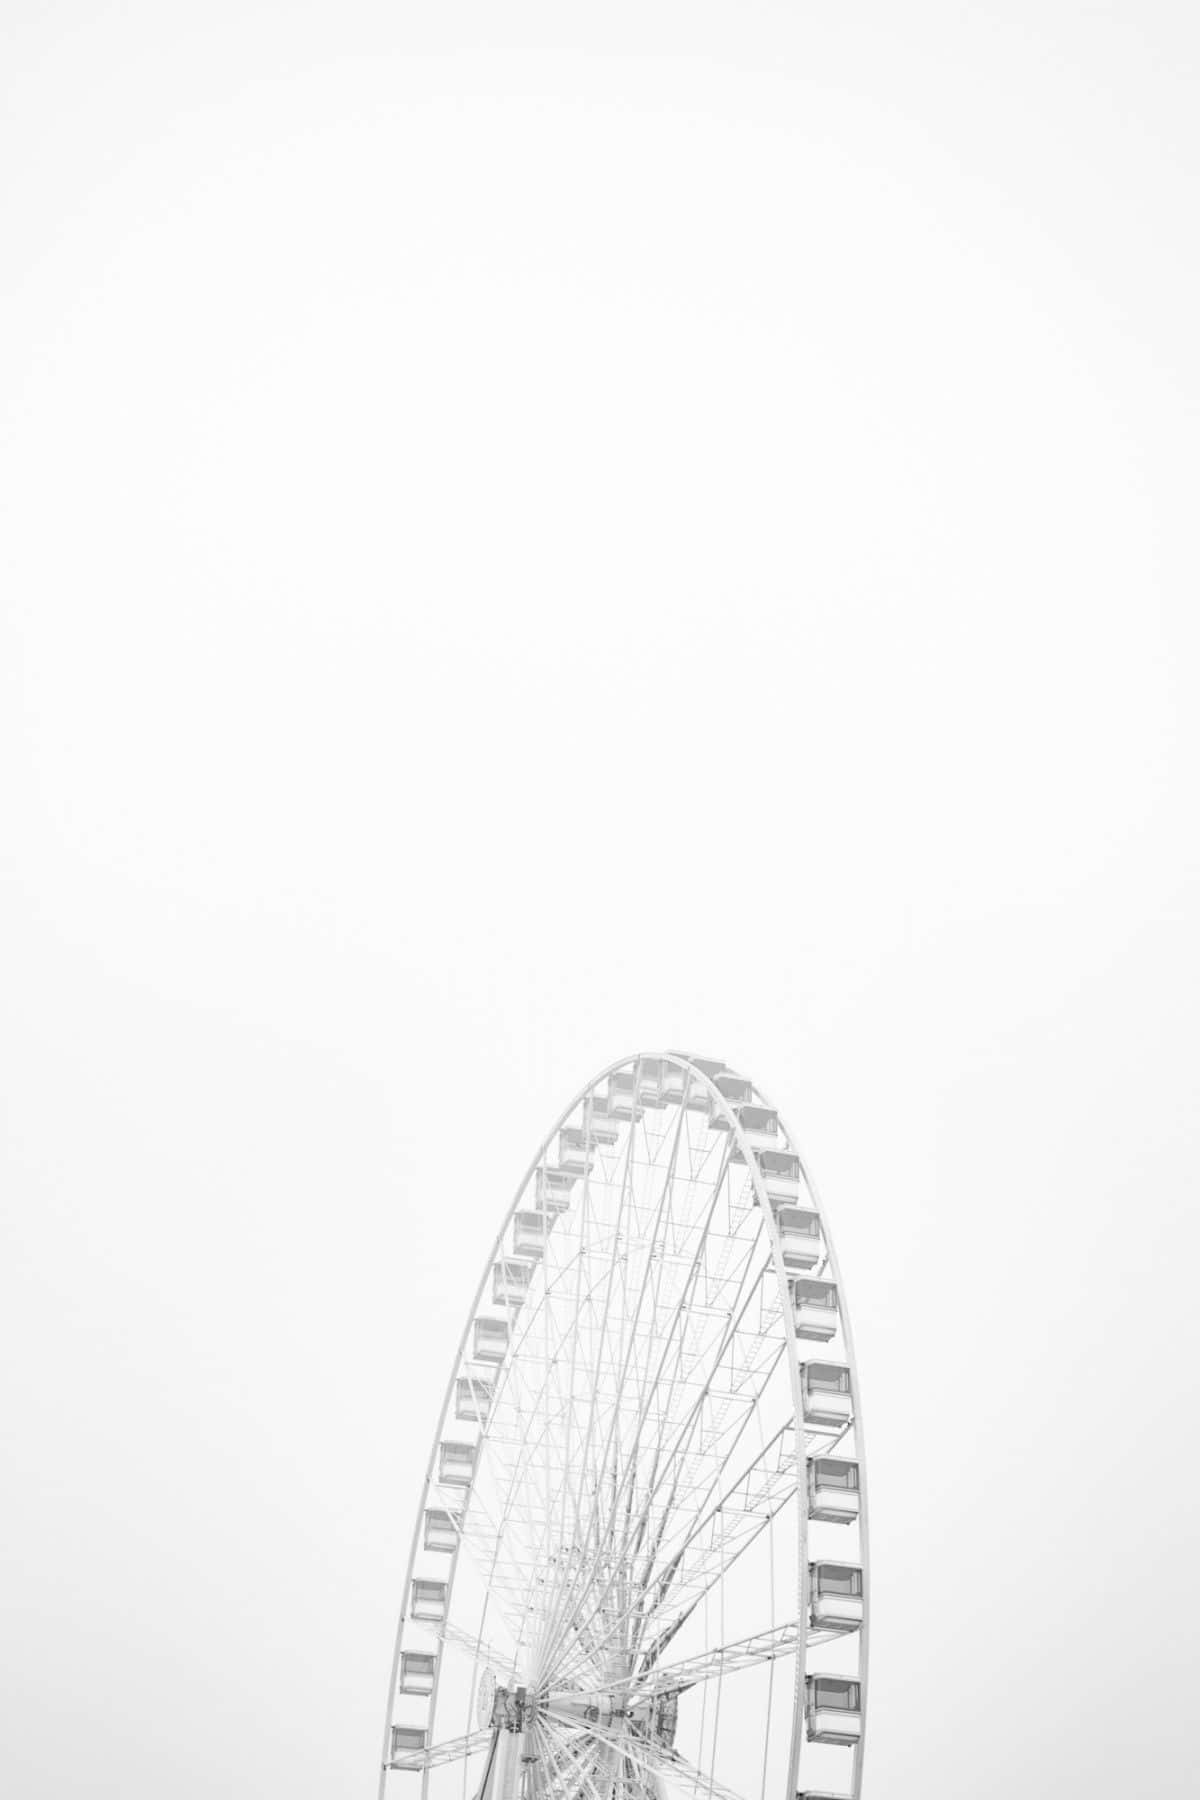 Ferris Wheel Soft White Aesthetic Wallpaper